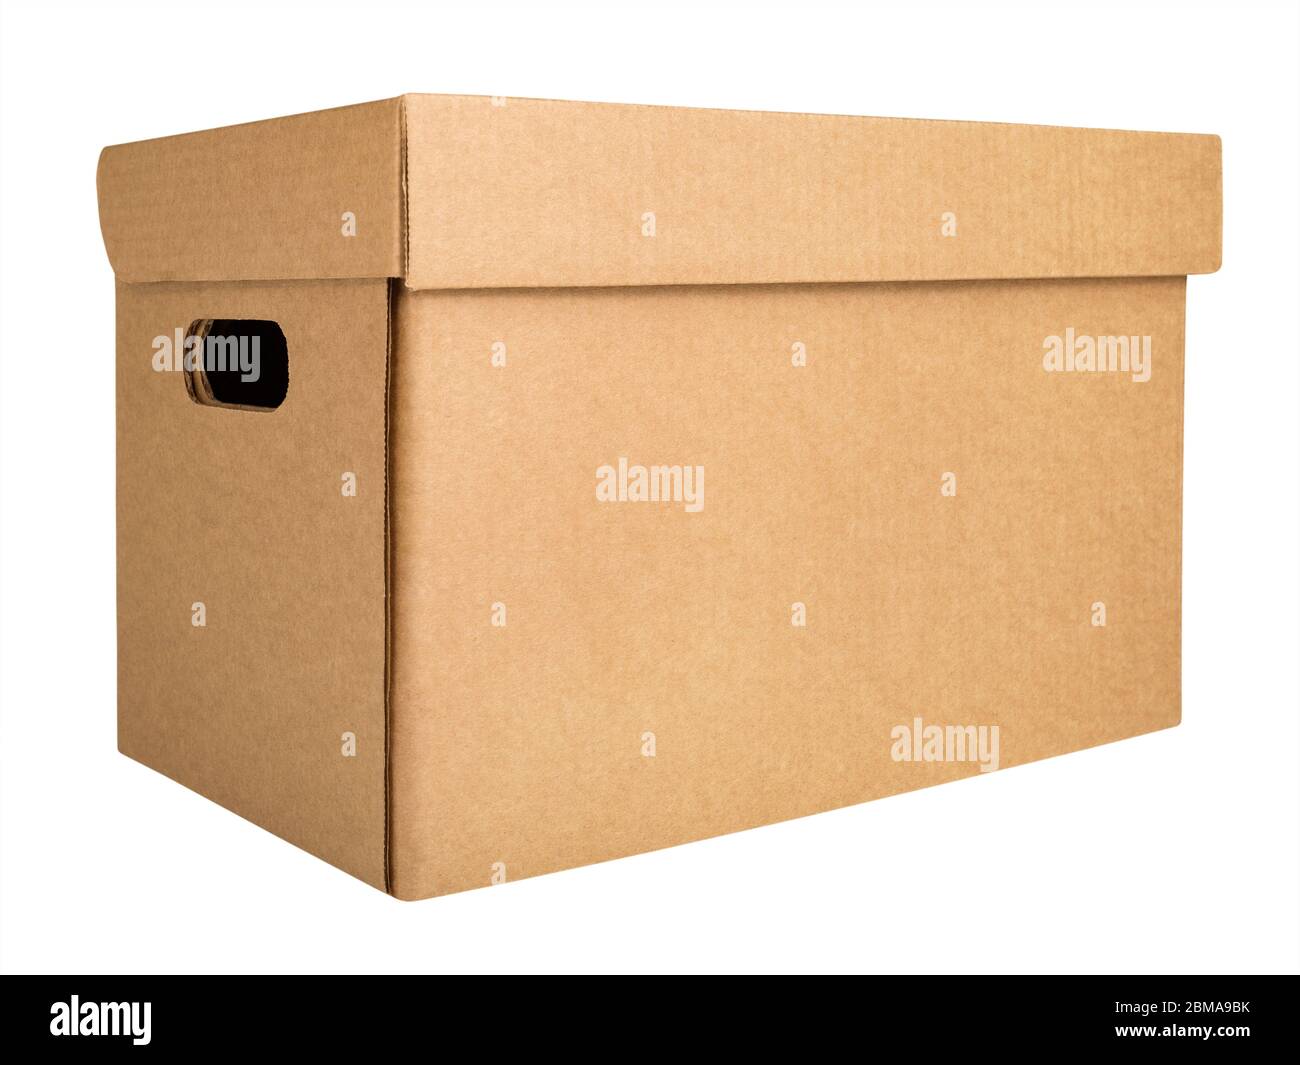 Cardboard archival storage box Stock Photo - Alamy